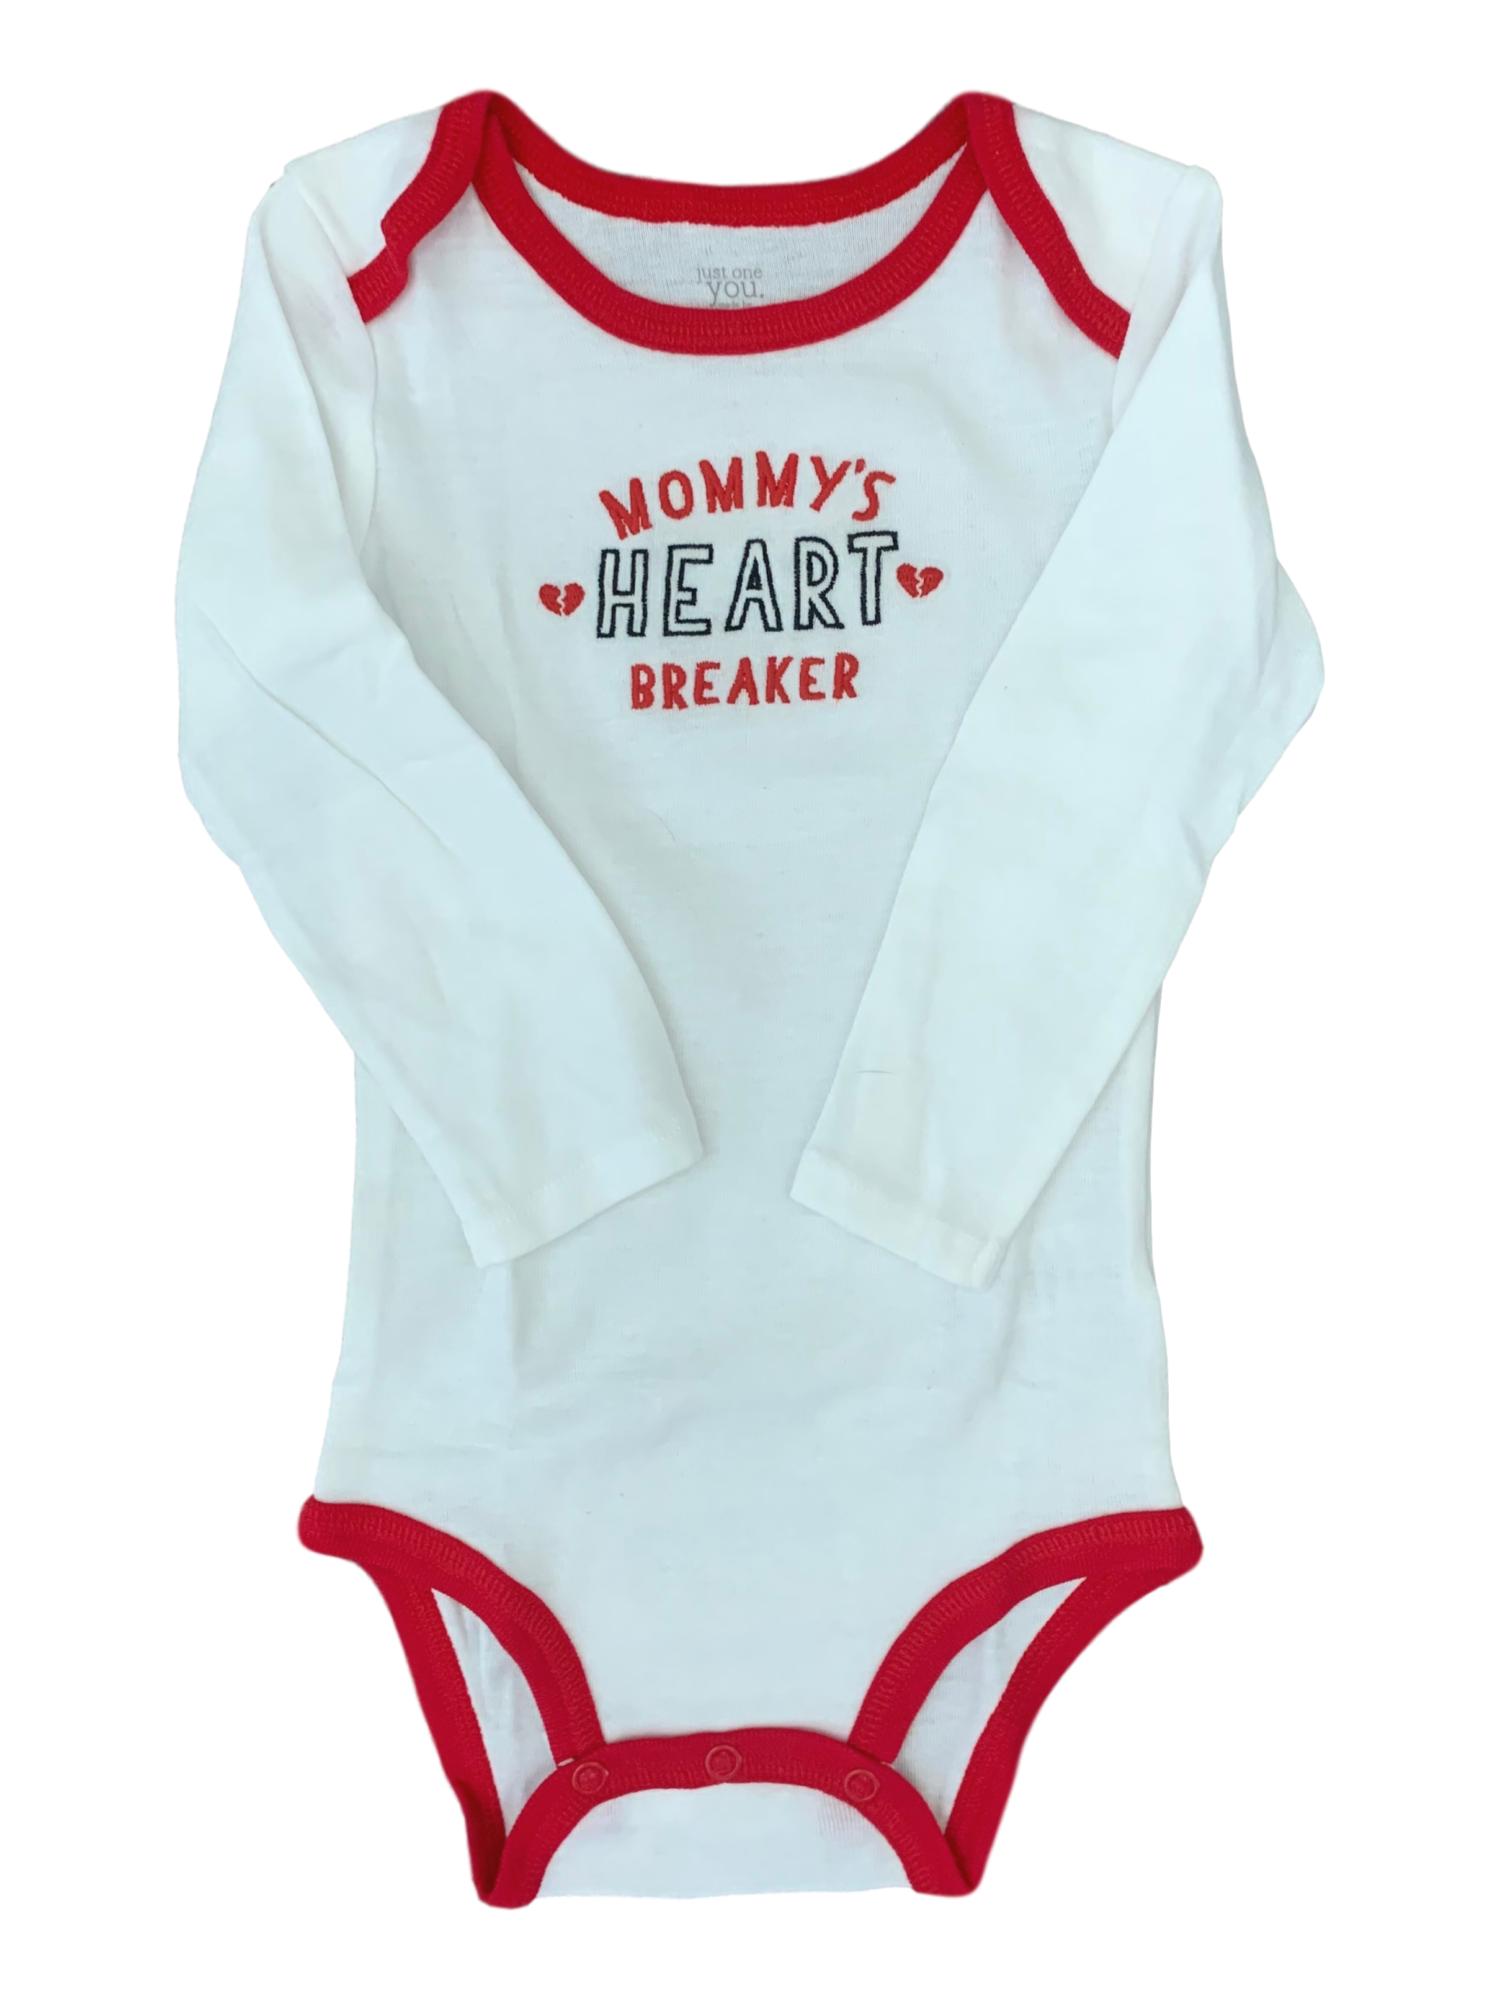 Carter's Carters Infant Boys & Girls Mommy's Heart Breaker White Bodysuit Creeper 12M